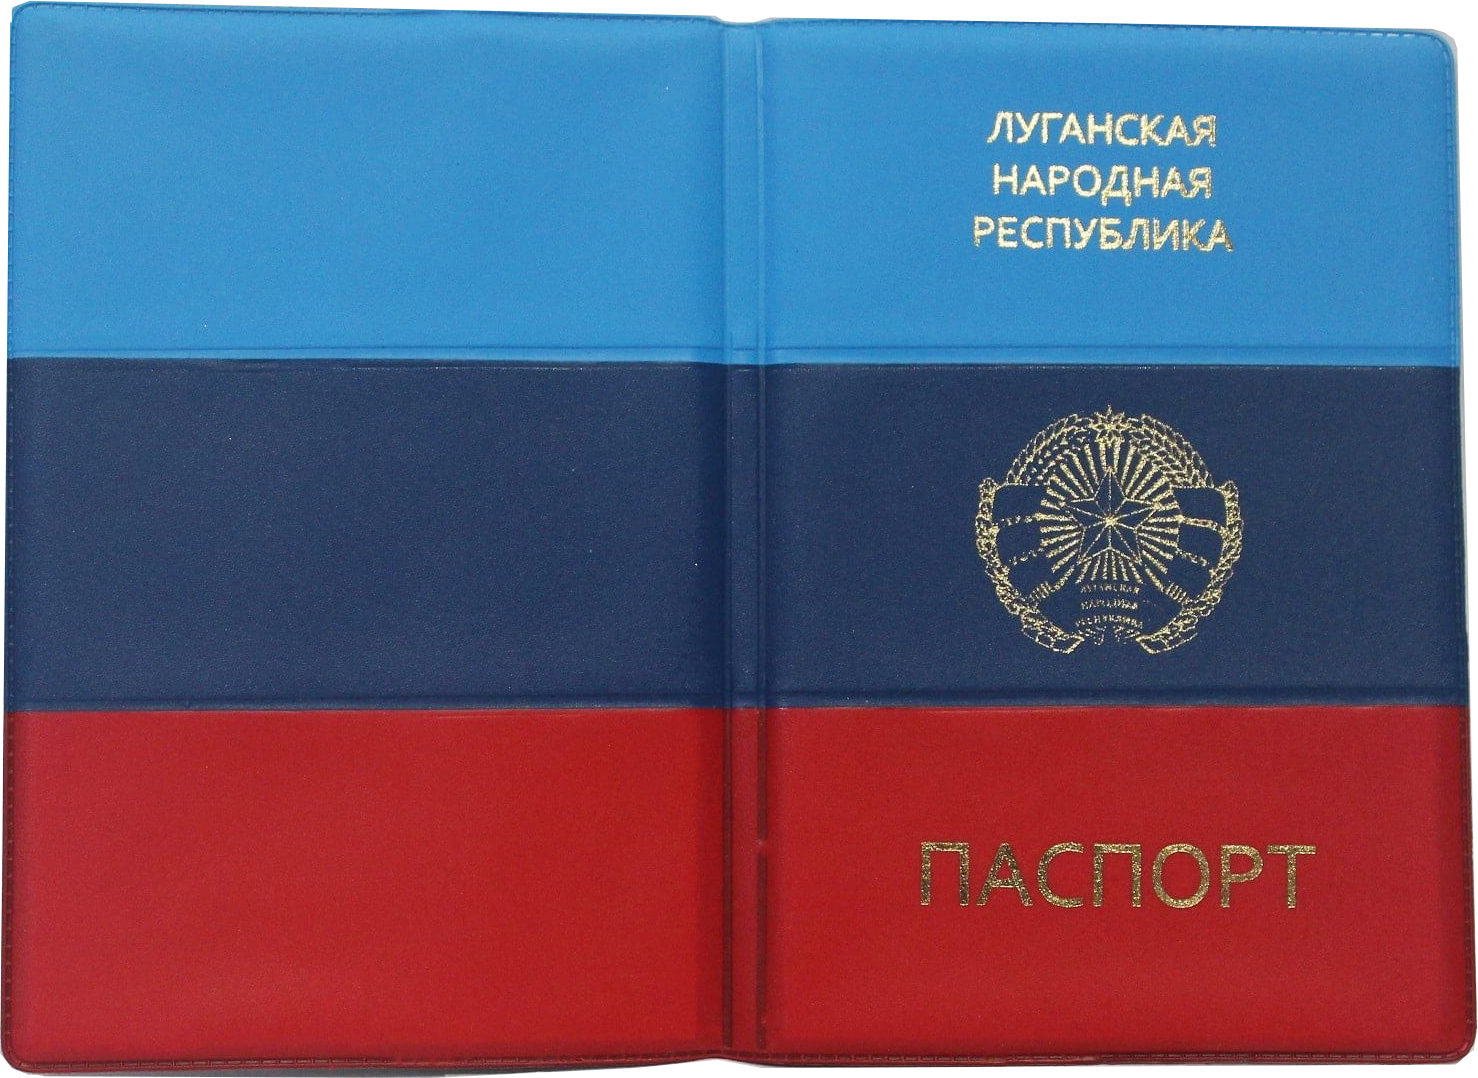 45 лет фото паспорт лнр